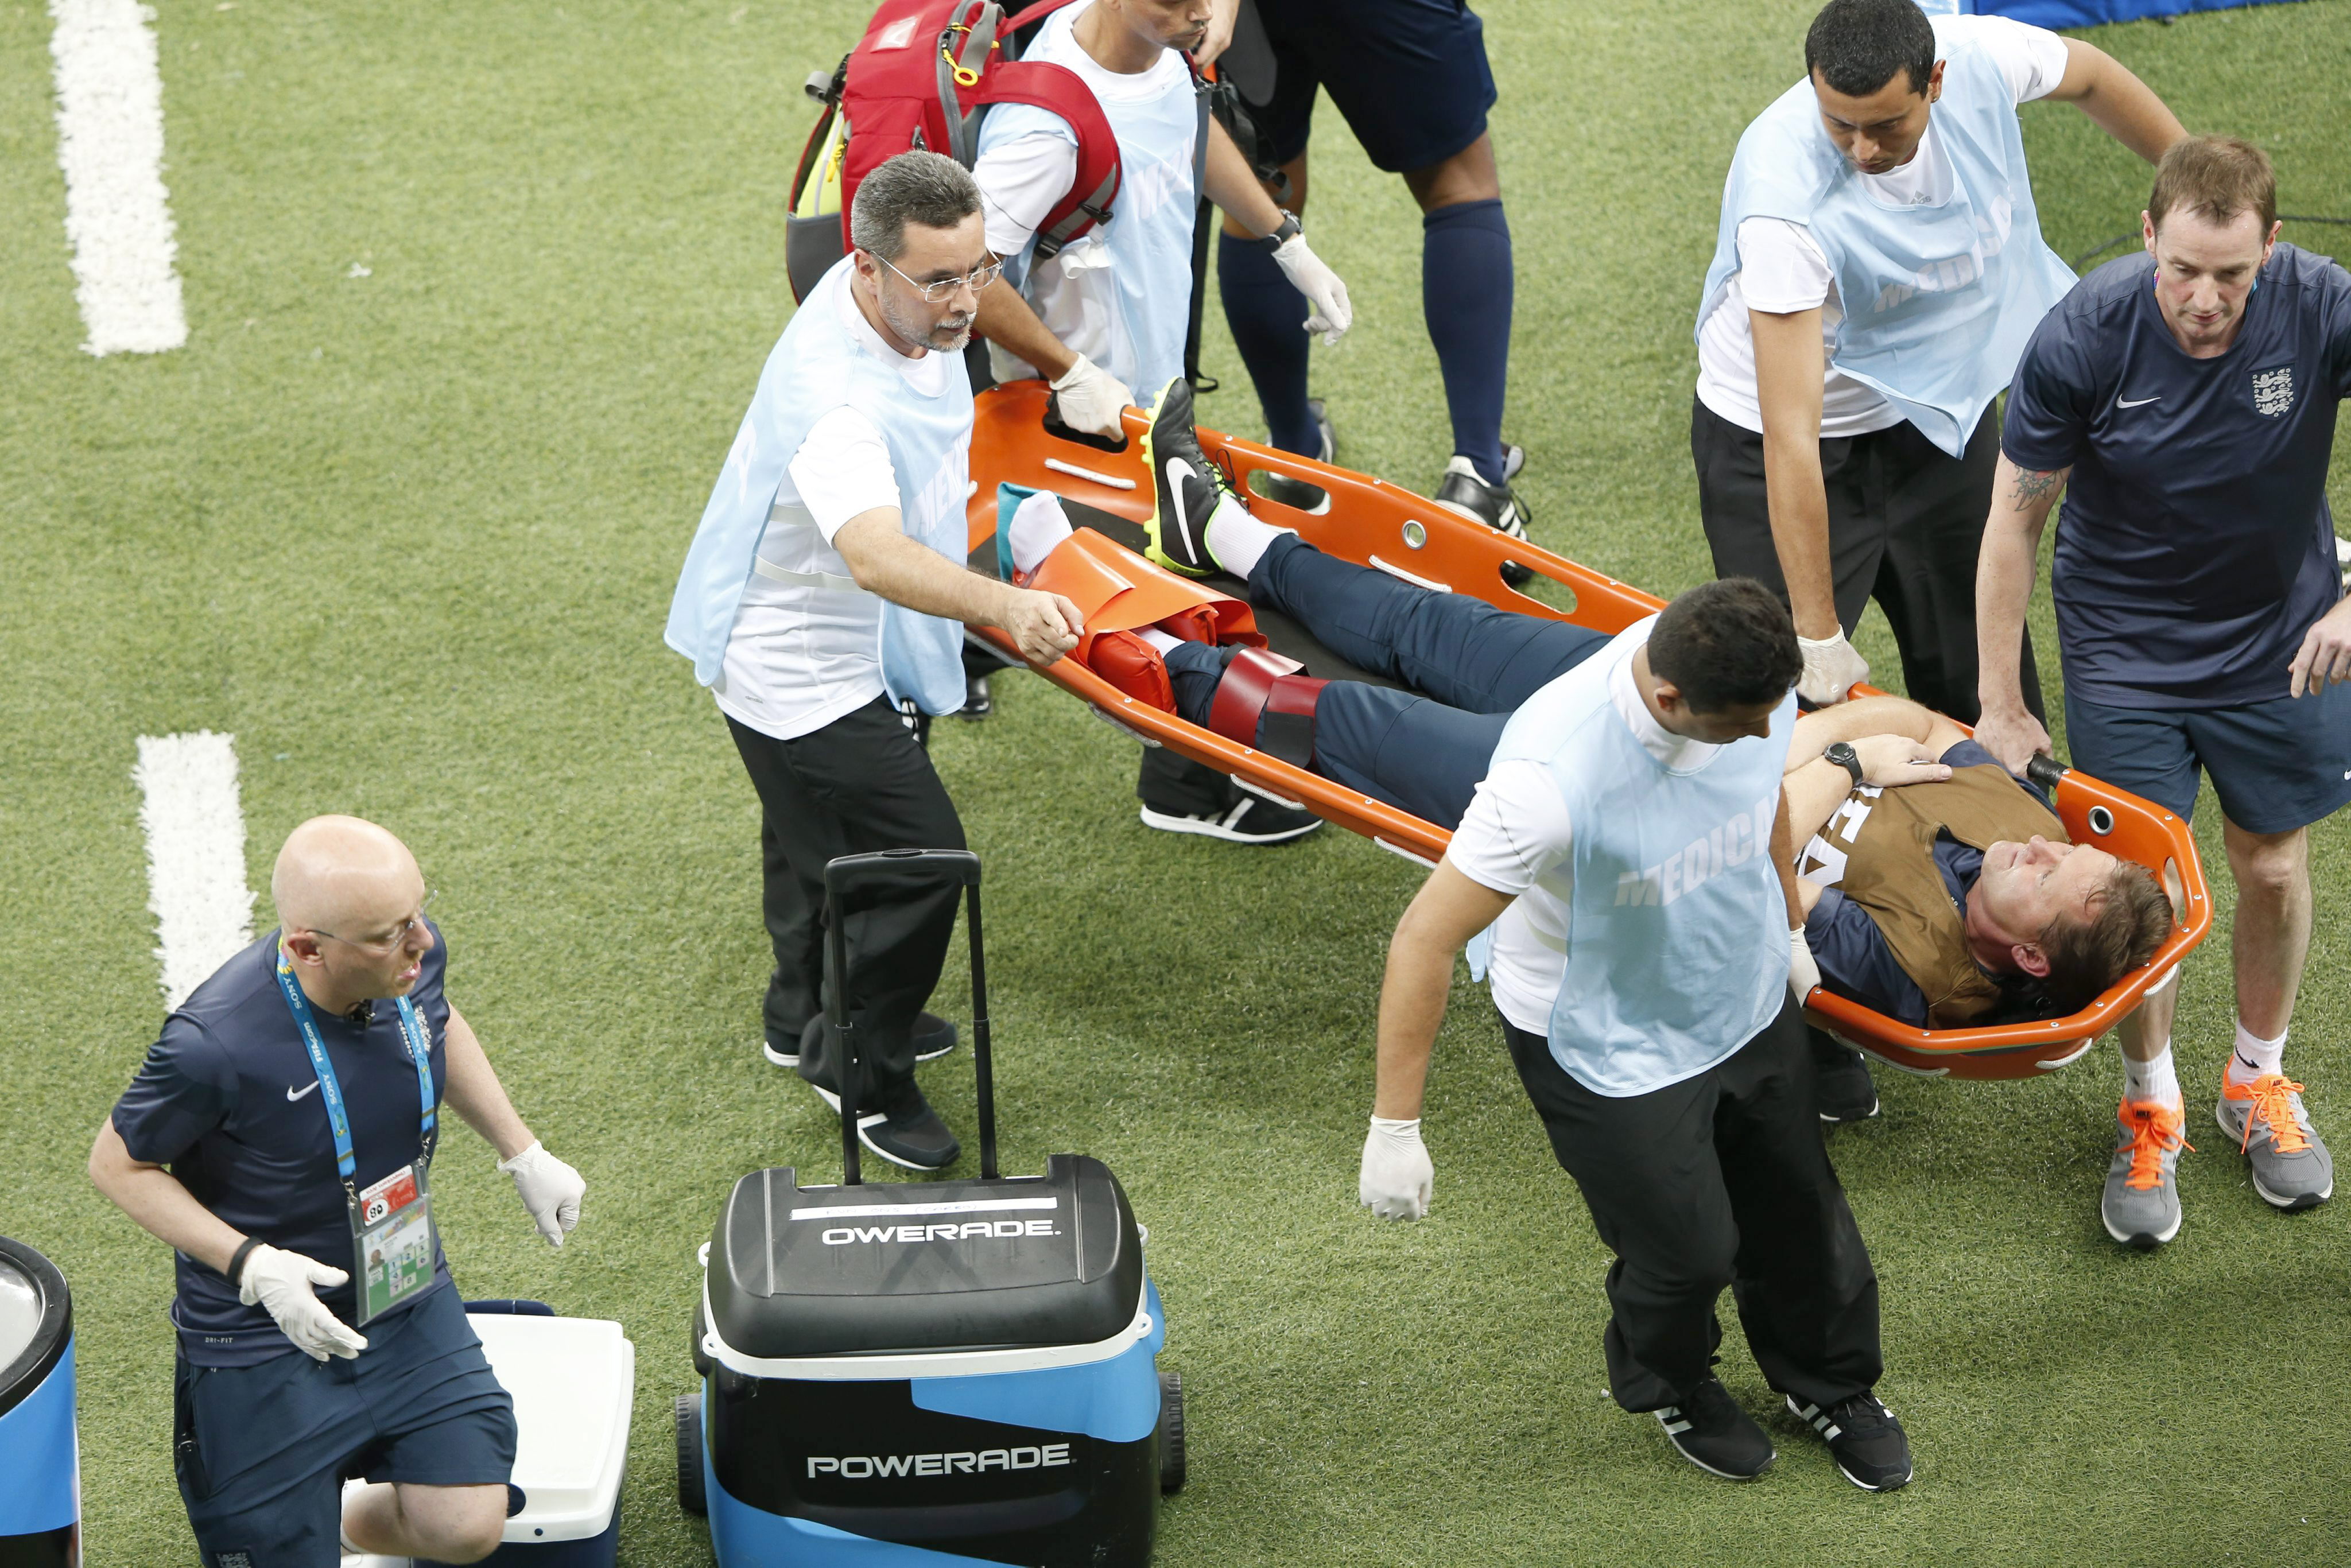 El fisio de Inglaterra se fracturó el tobillo al celebrar un gol y caer sobre una botella de agua